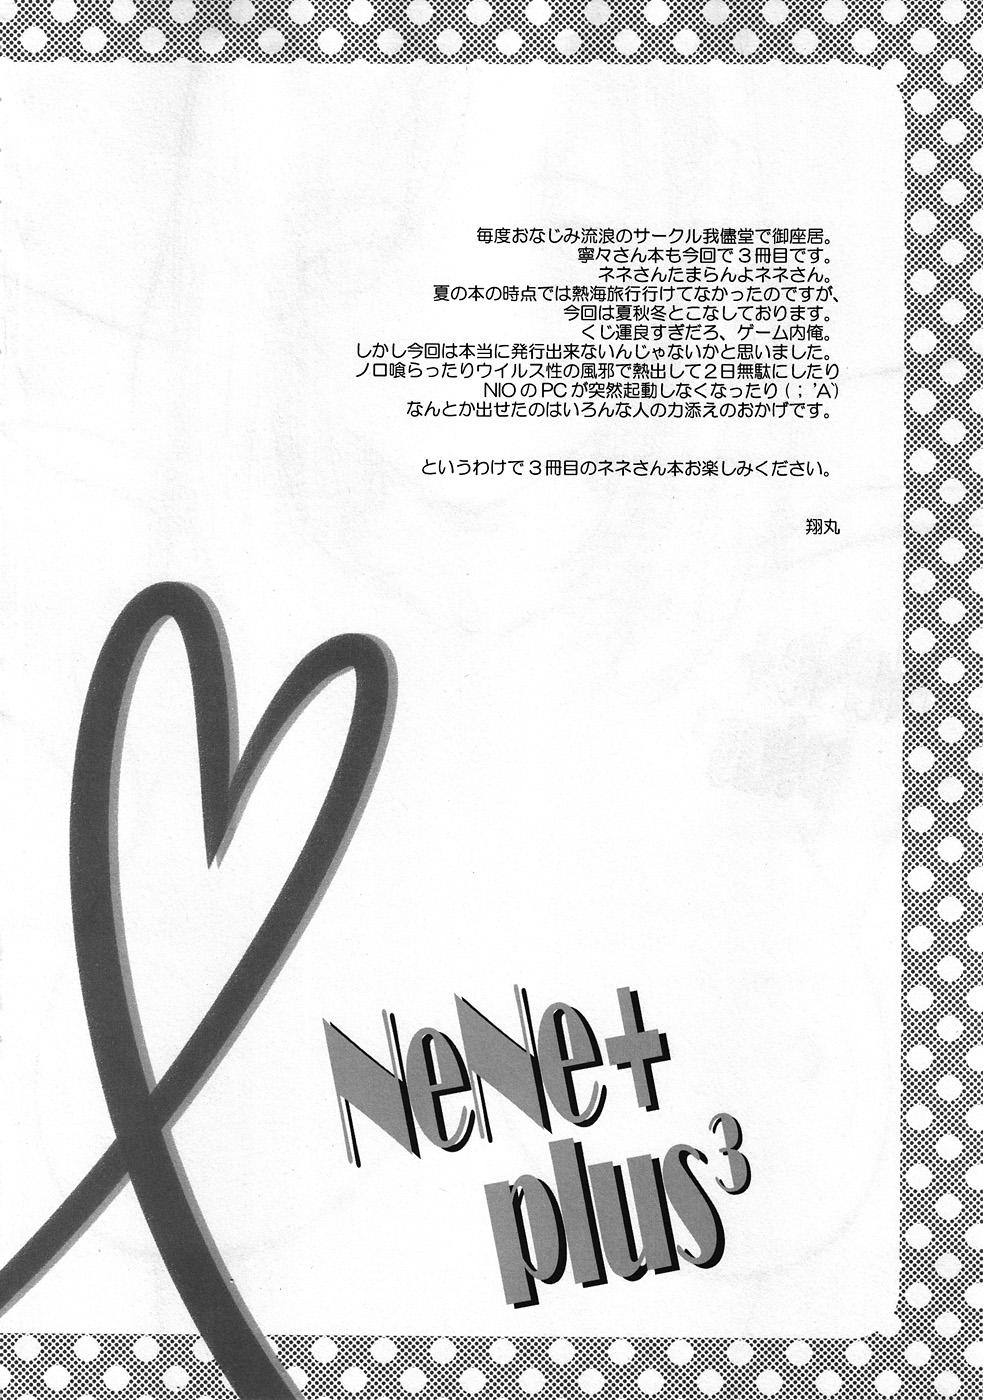 Verification NeNe+ plus 3 - Love plus Master - Page 3